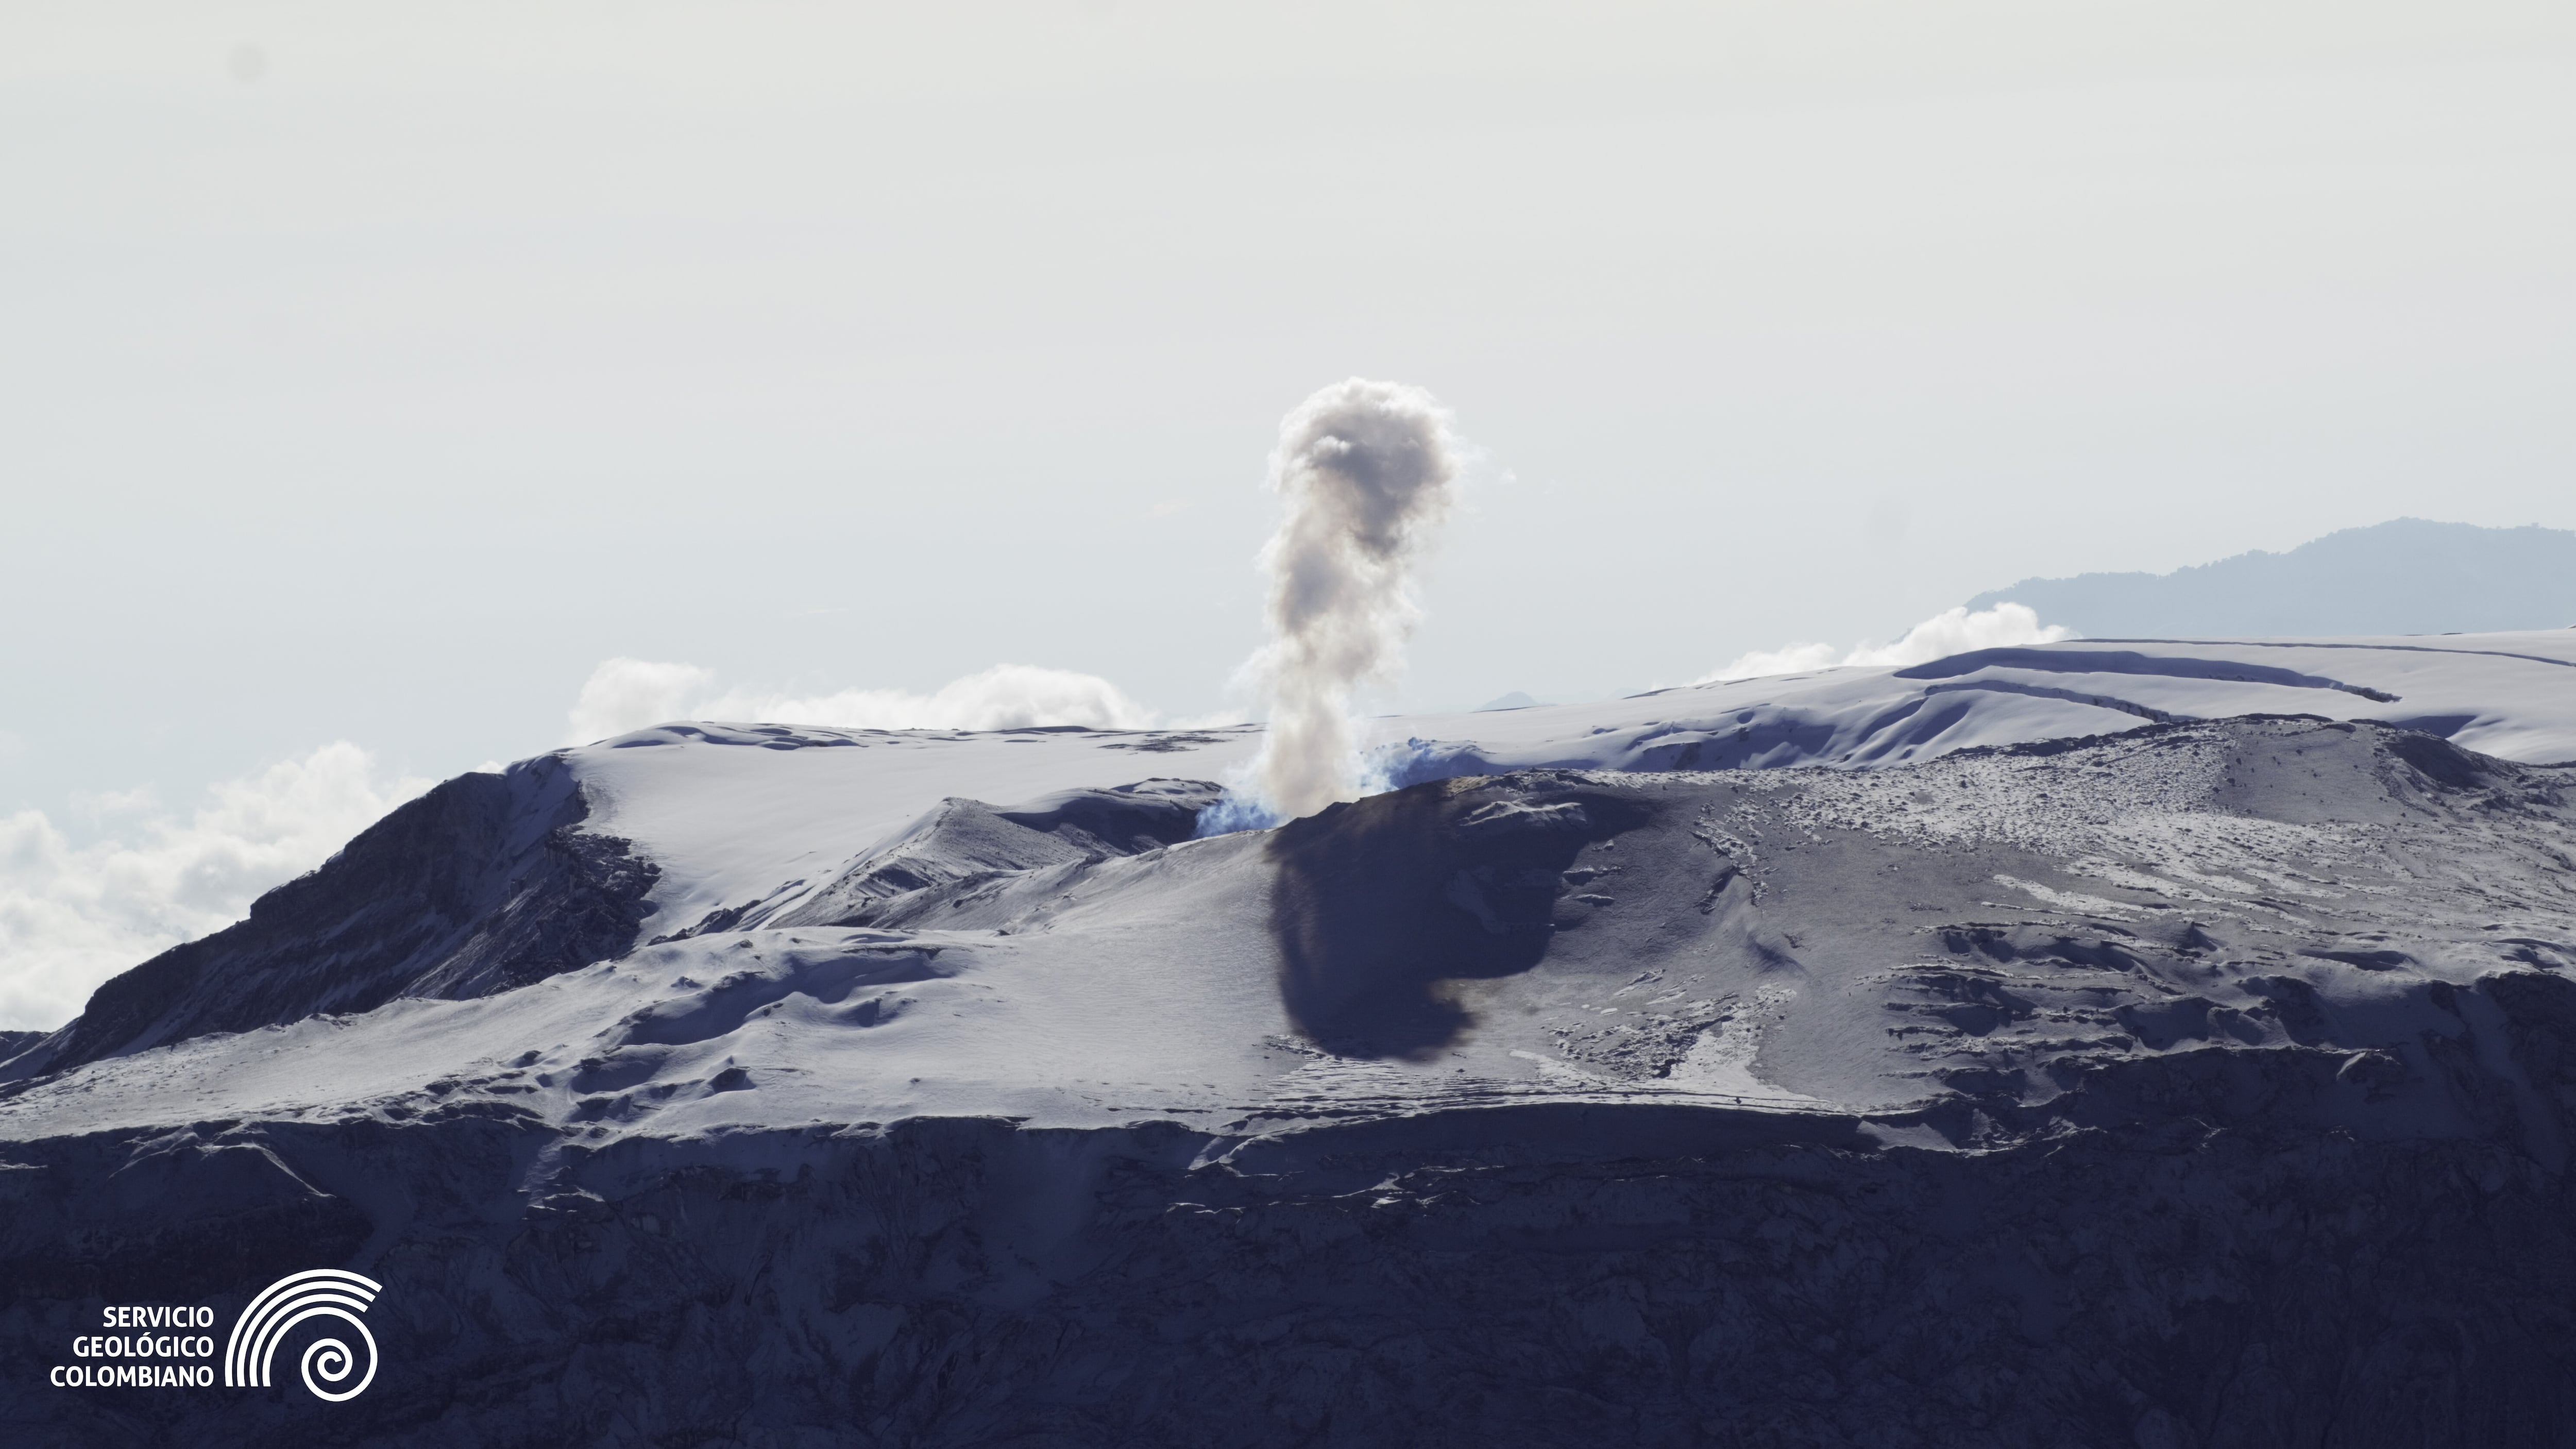 Siga en vivo la actividad y las noticias sobre el volcán Nevado del Ruiz